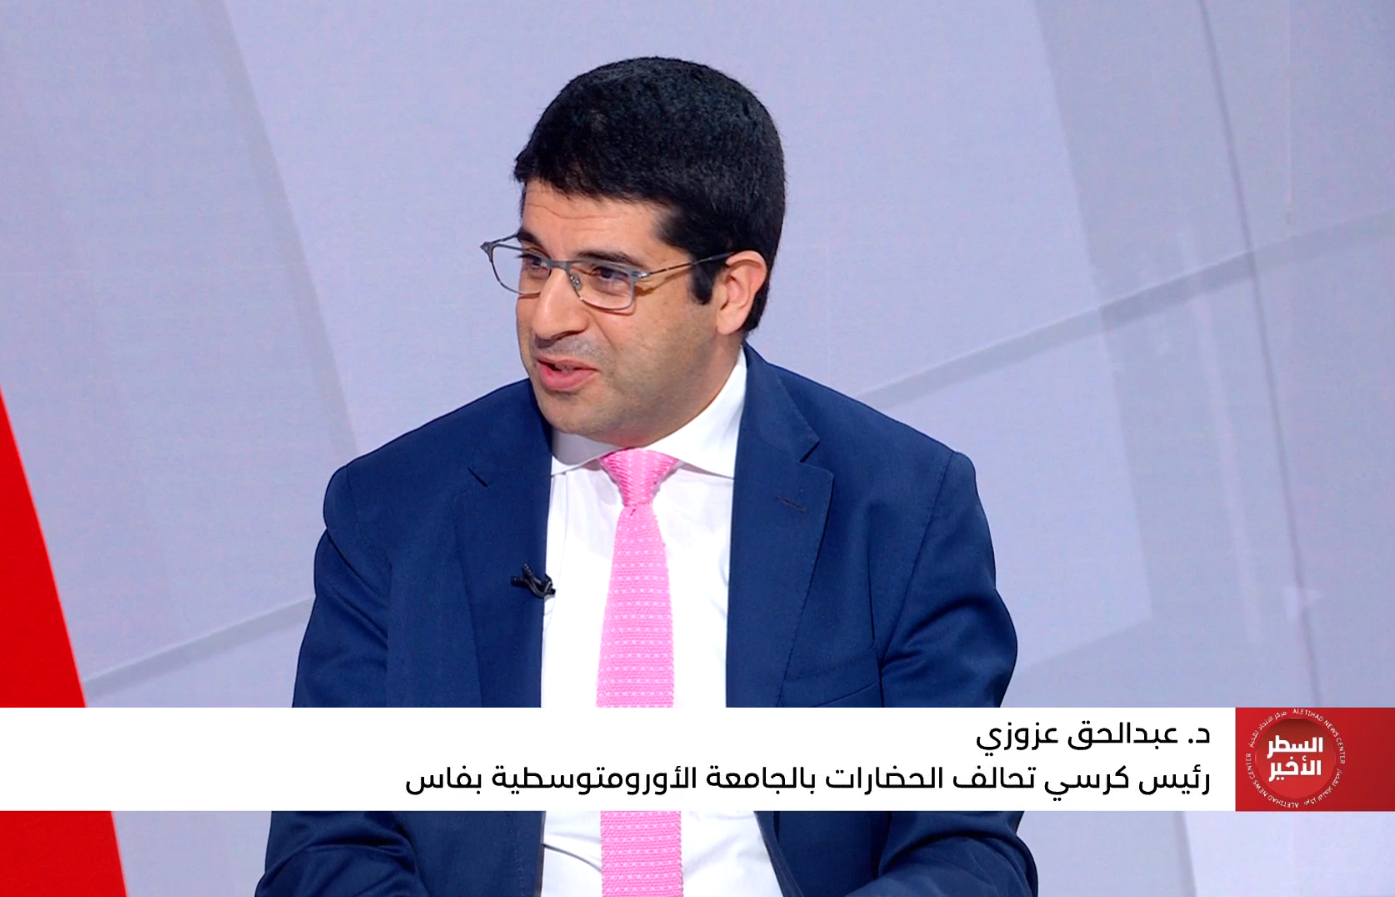 الدكتور عبد الحق العزوزي، رئيس كرسي تحالف الحضارات، ضيف برنامج الس طر الأخير على قناة أبو ظبي